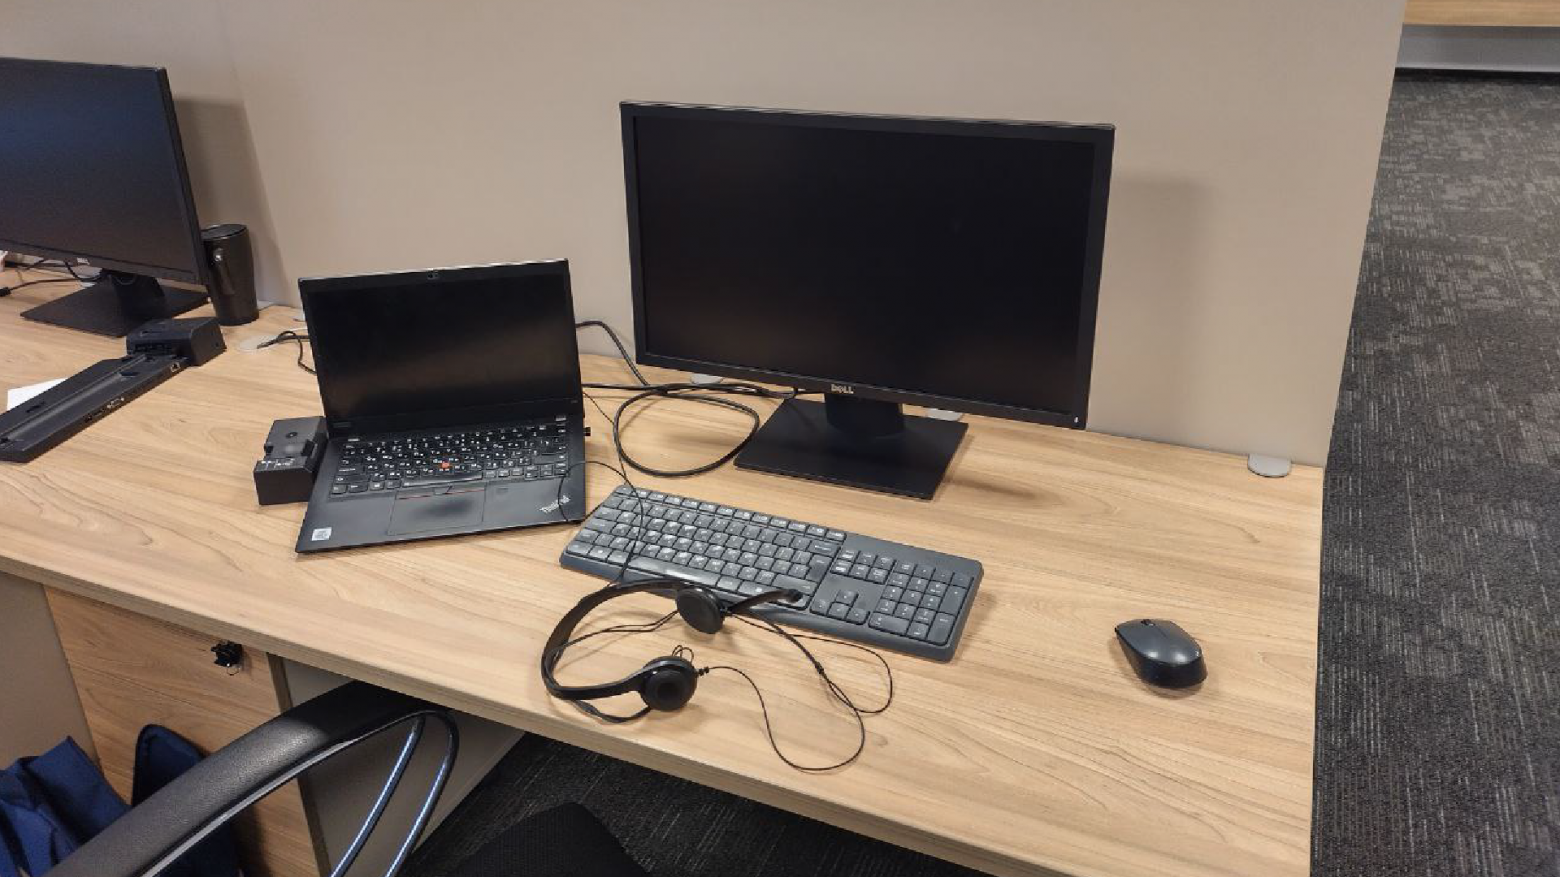 Так выглядит рабочее место большинства моих коллег и подчиненных. Компания предоставляет разработчикам ноутбук Thinkpad и внешний монитор. 